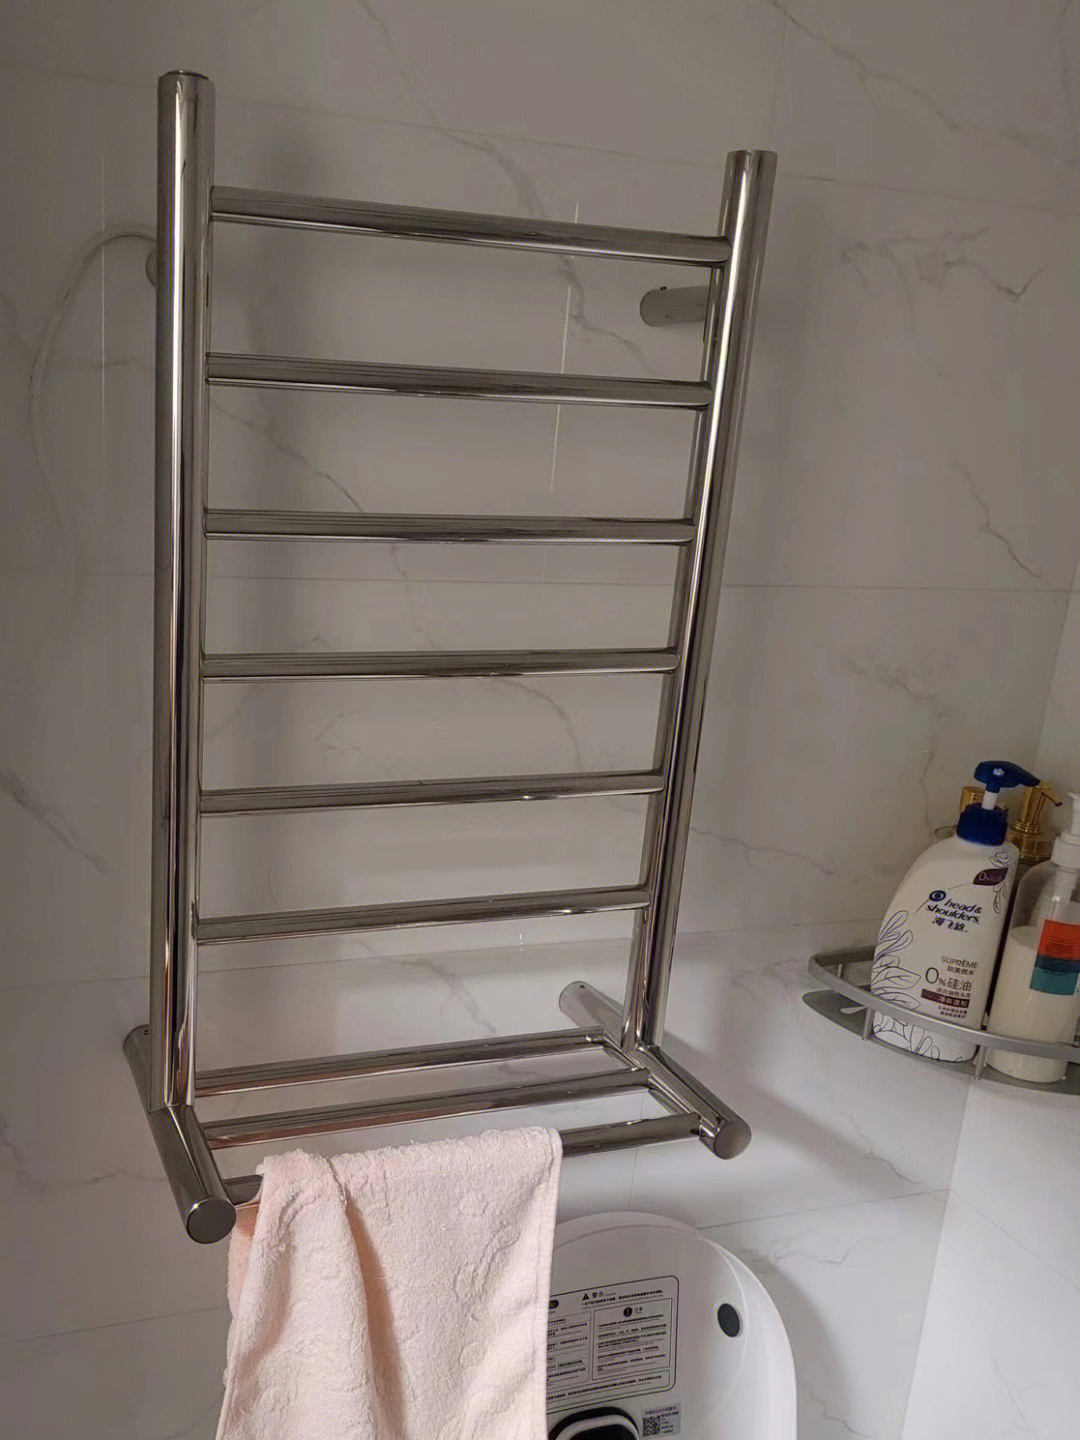 浴巾架安装高度及位置图片